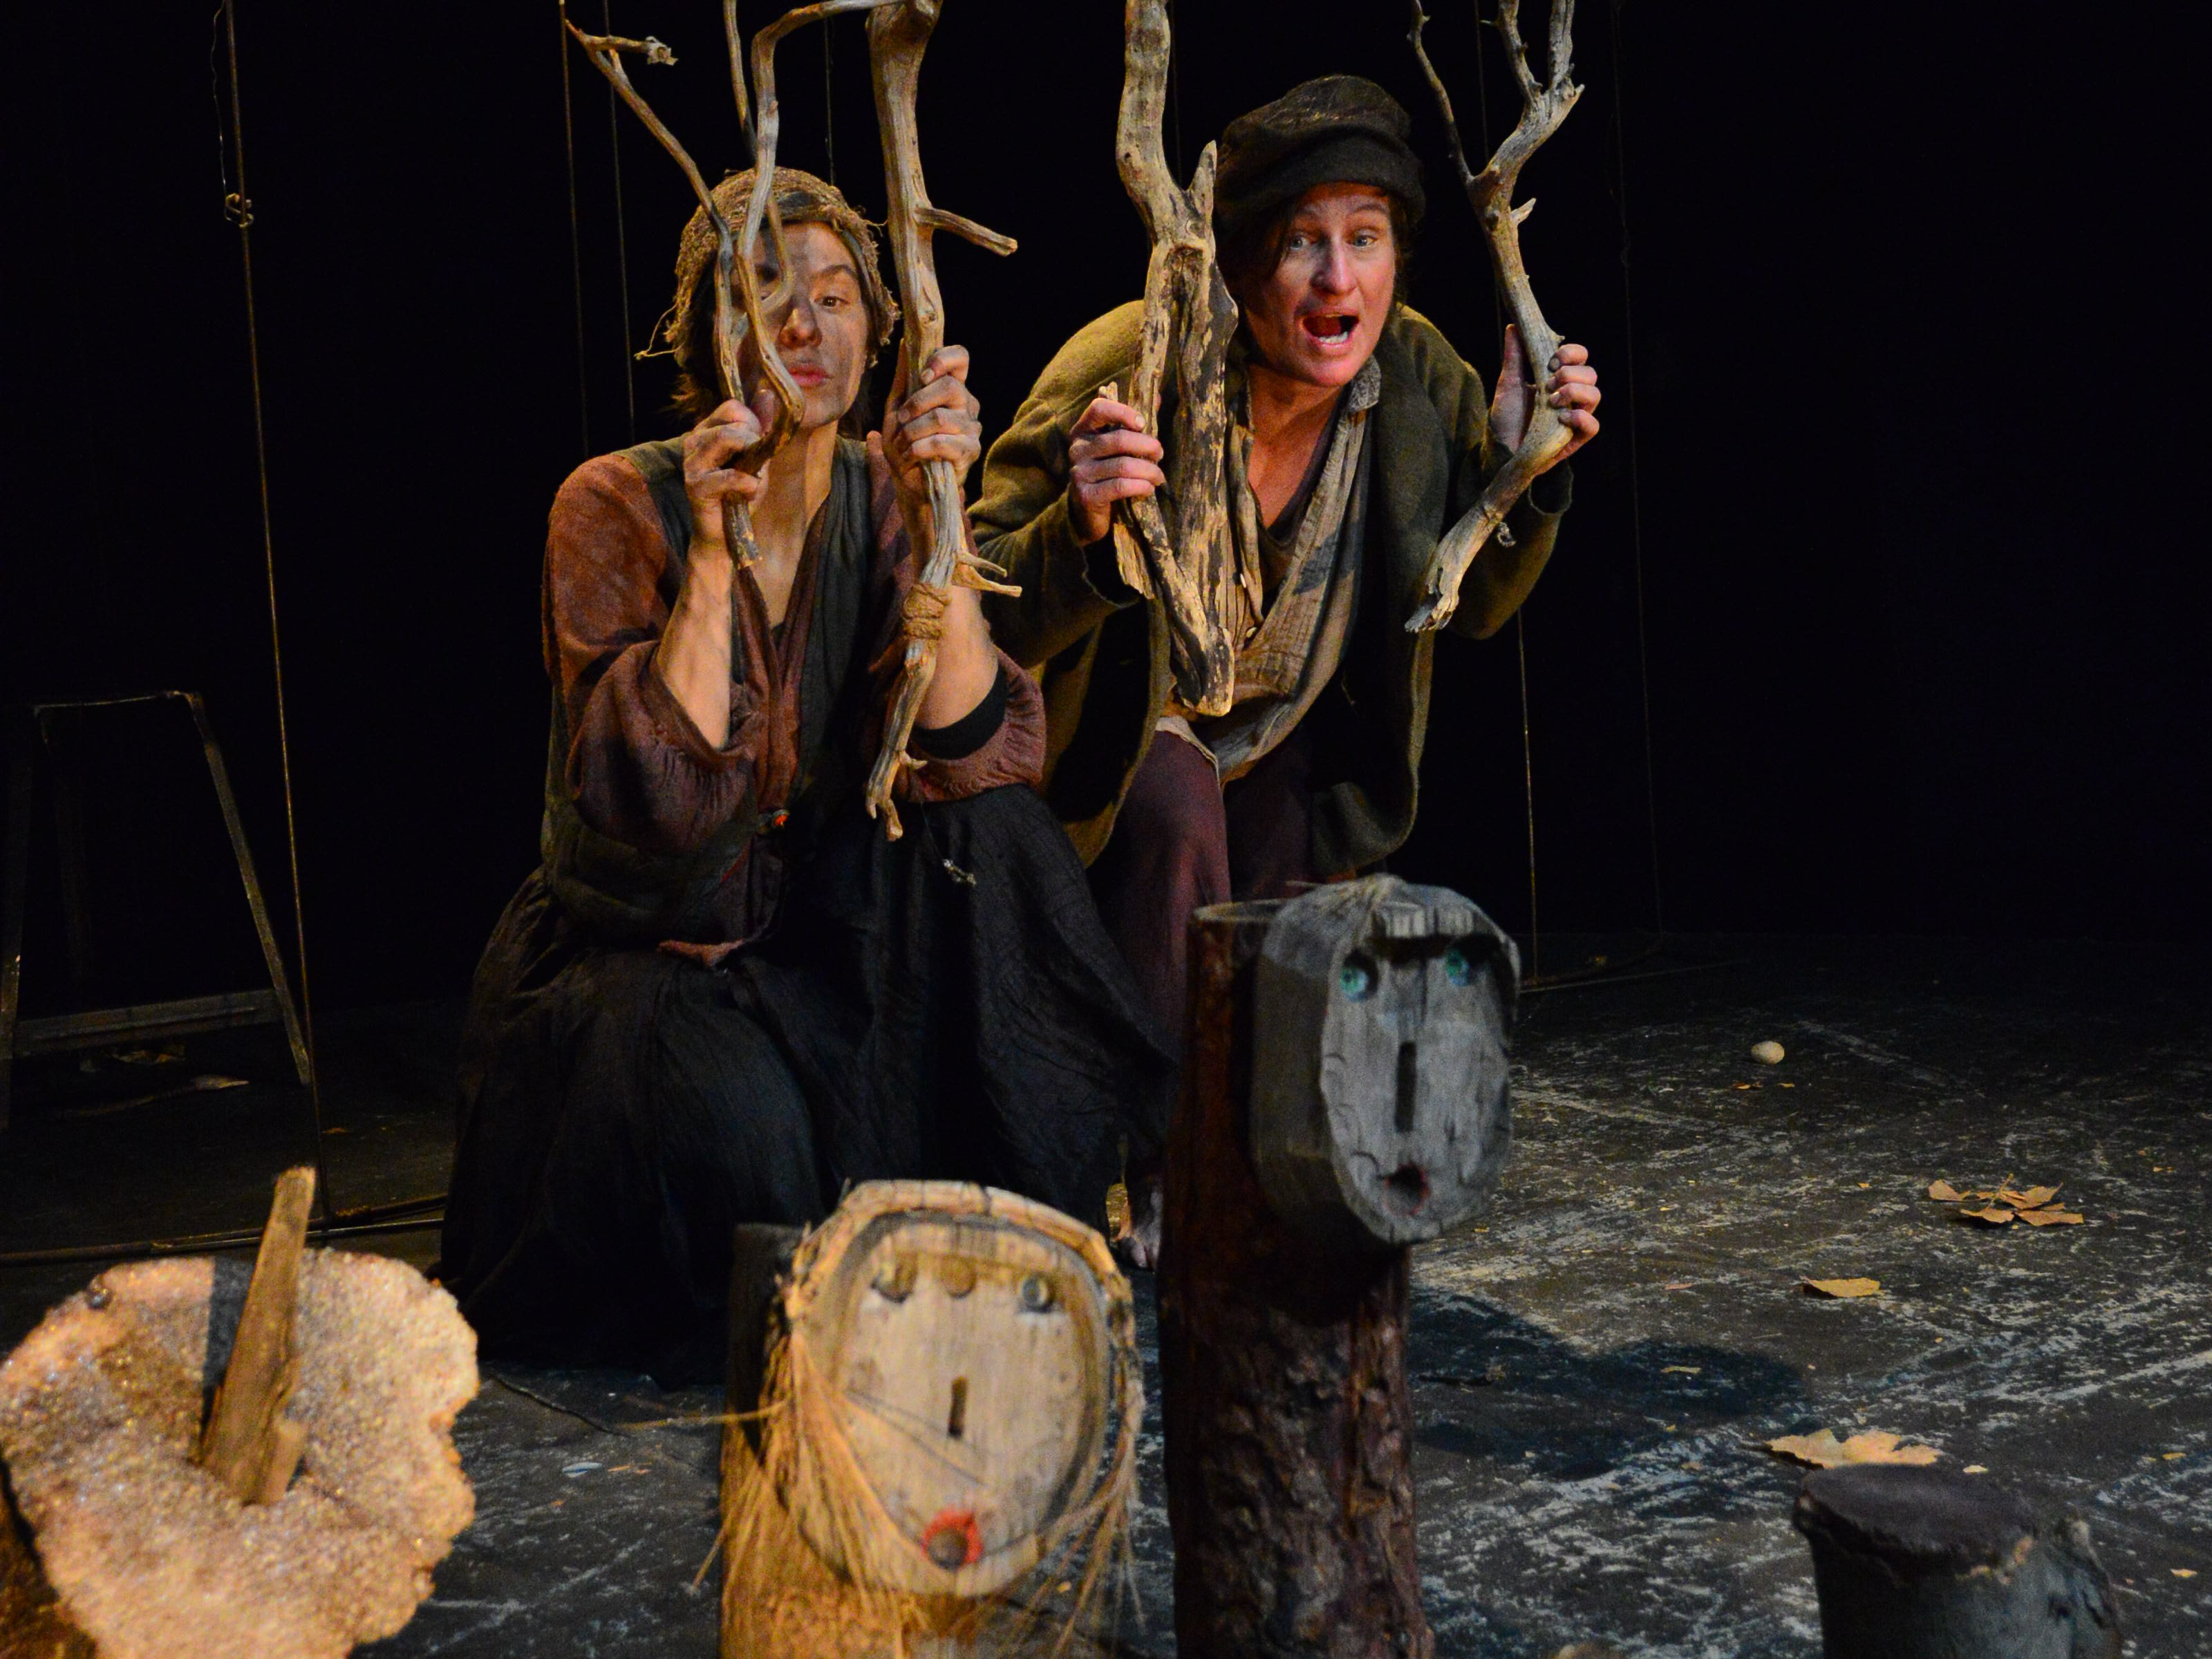 Hänsel und Gretel stehen mit dreckigen Gesichtern hinter ein paar Holzästen, die einen Käfig andeuten. Vor ihnen stehen zwei Baumstammstücke mit minimalistisch aufgezeichneten Gesichtern.